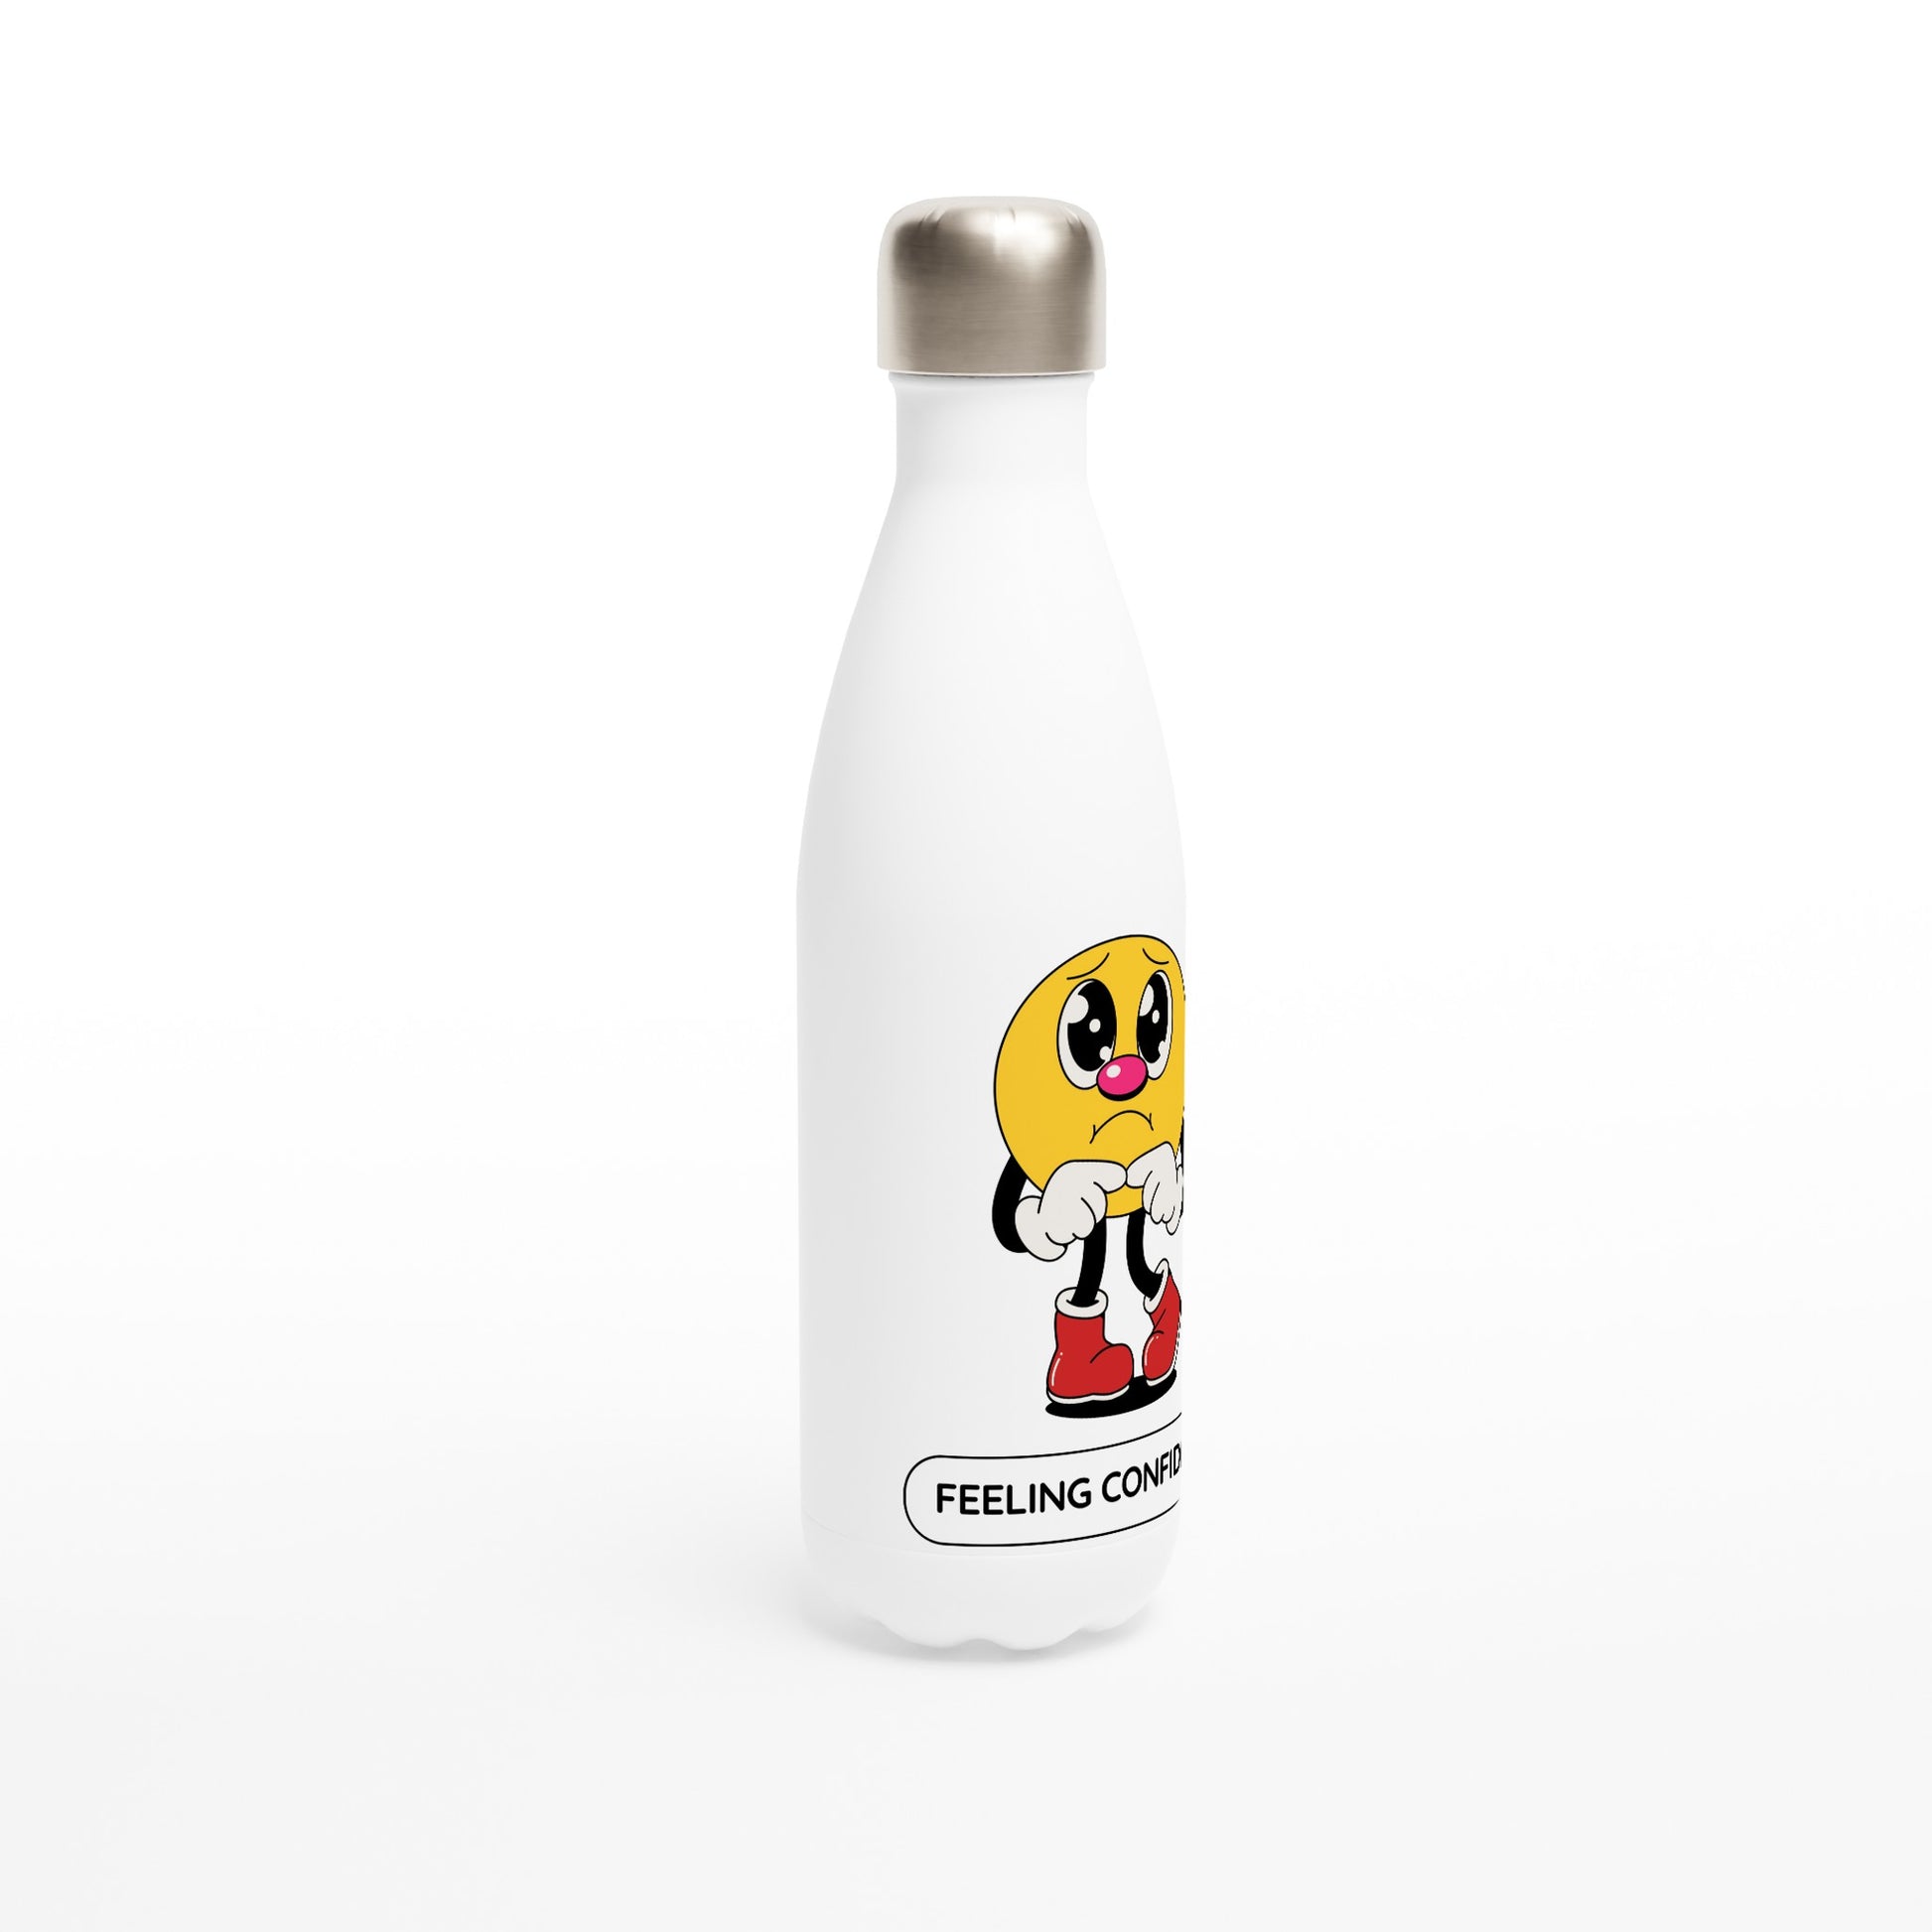 Feeling Confident - White 17oz Stainless Steel Water Bottle White Water Bottle